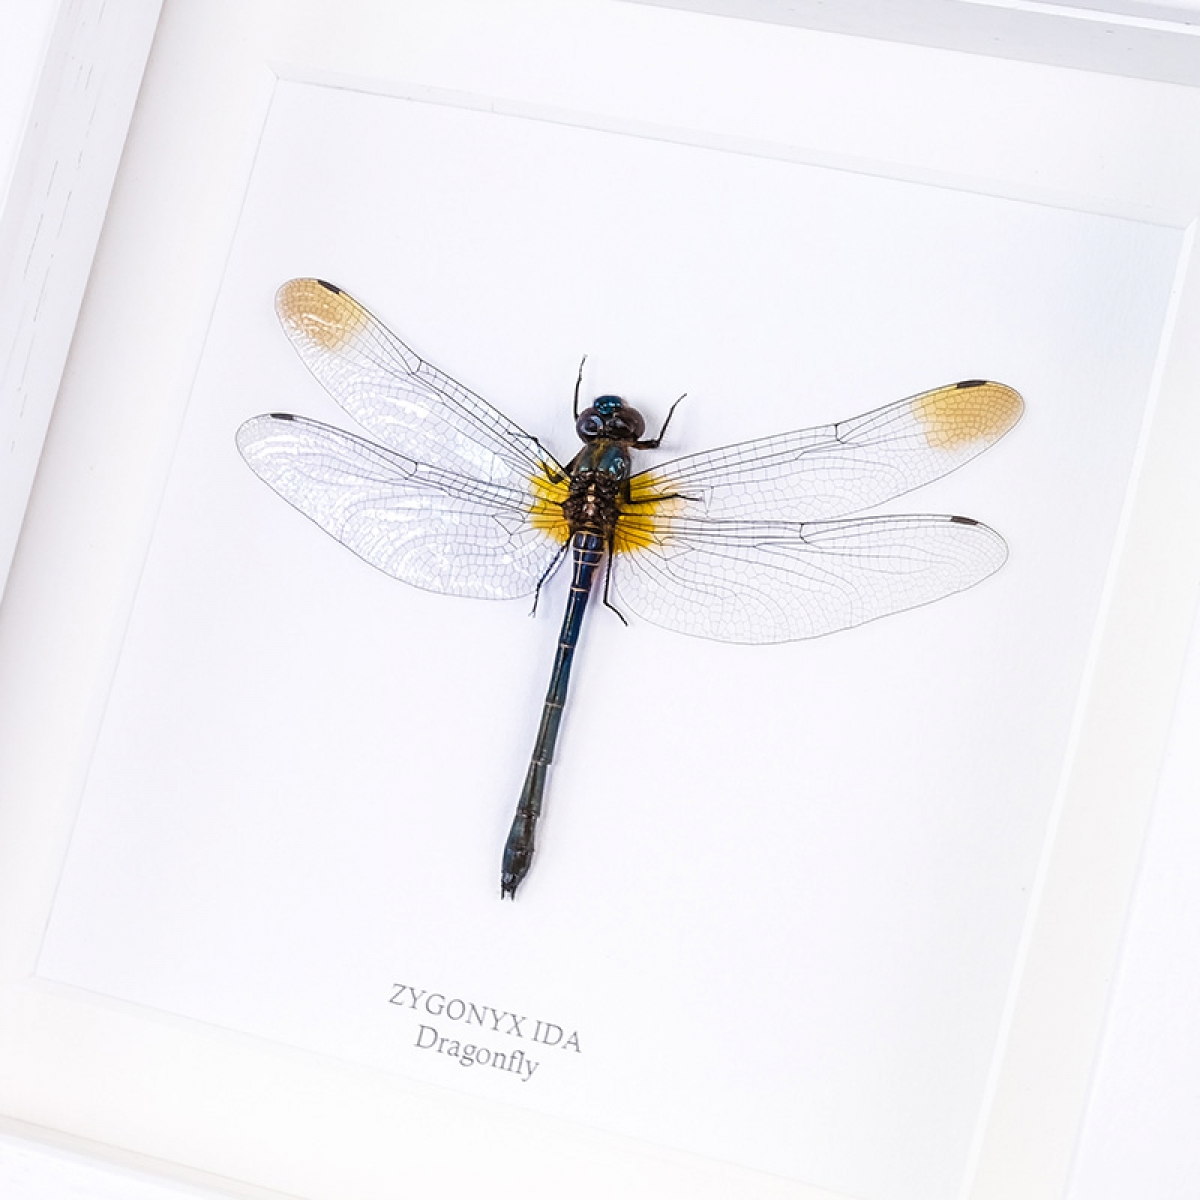 Dragonfly in Box Frame (Zygonyx ida)